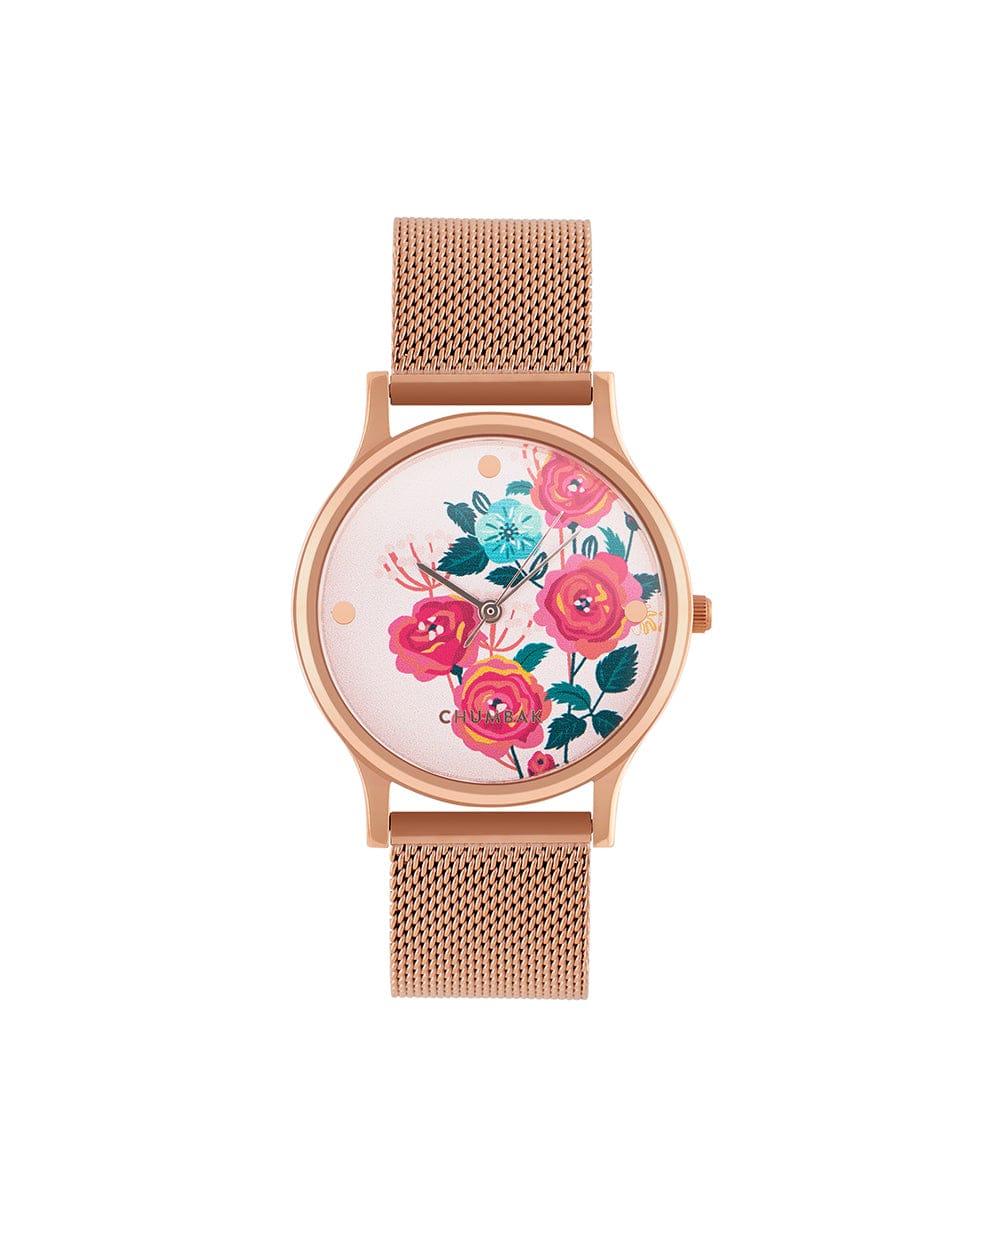 TEAL by Chumbak Rose Garden Wrist Watch